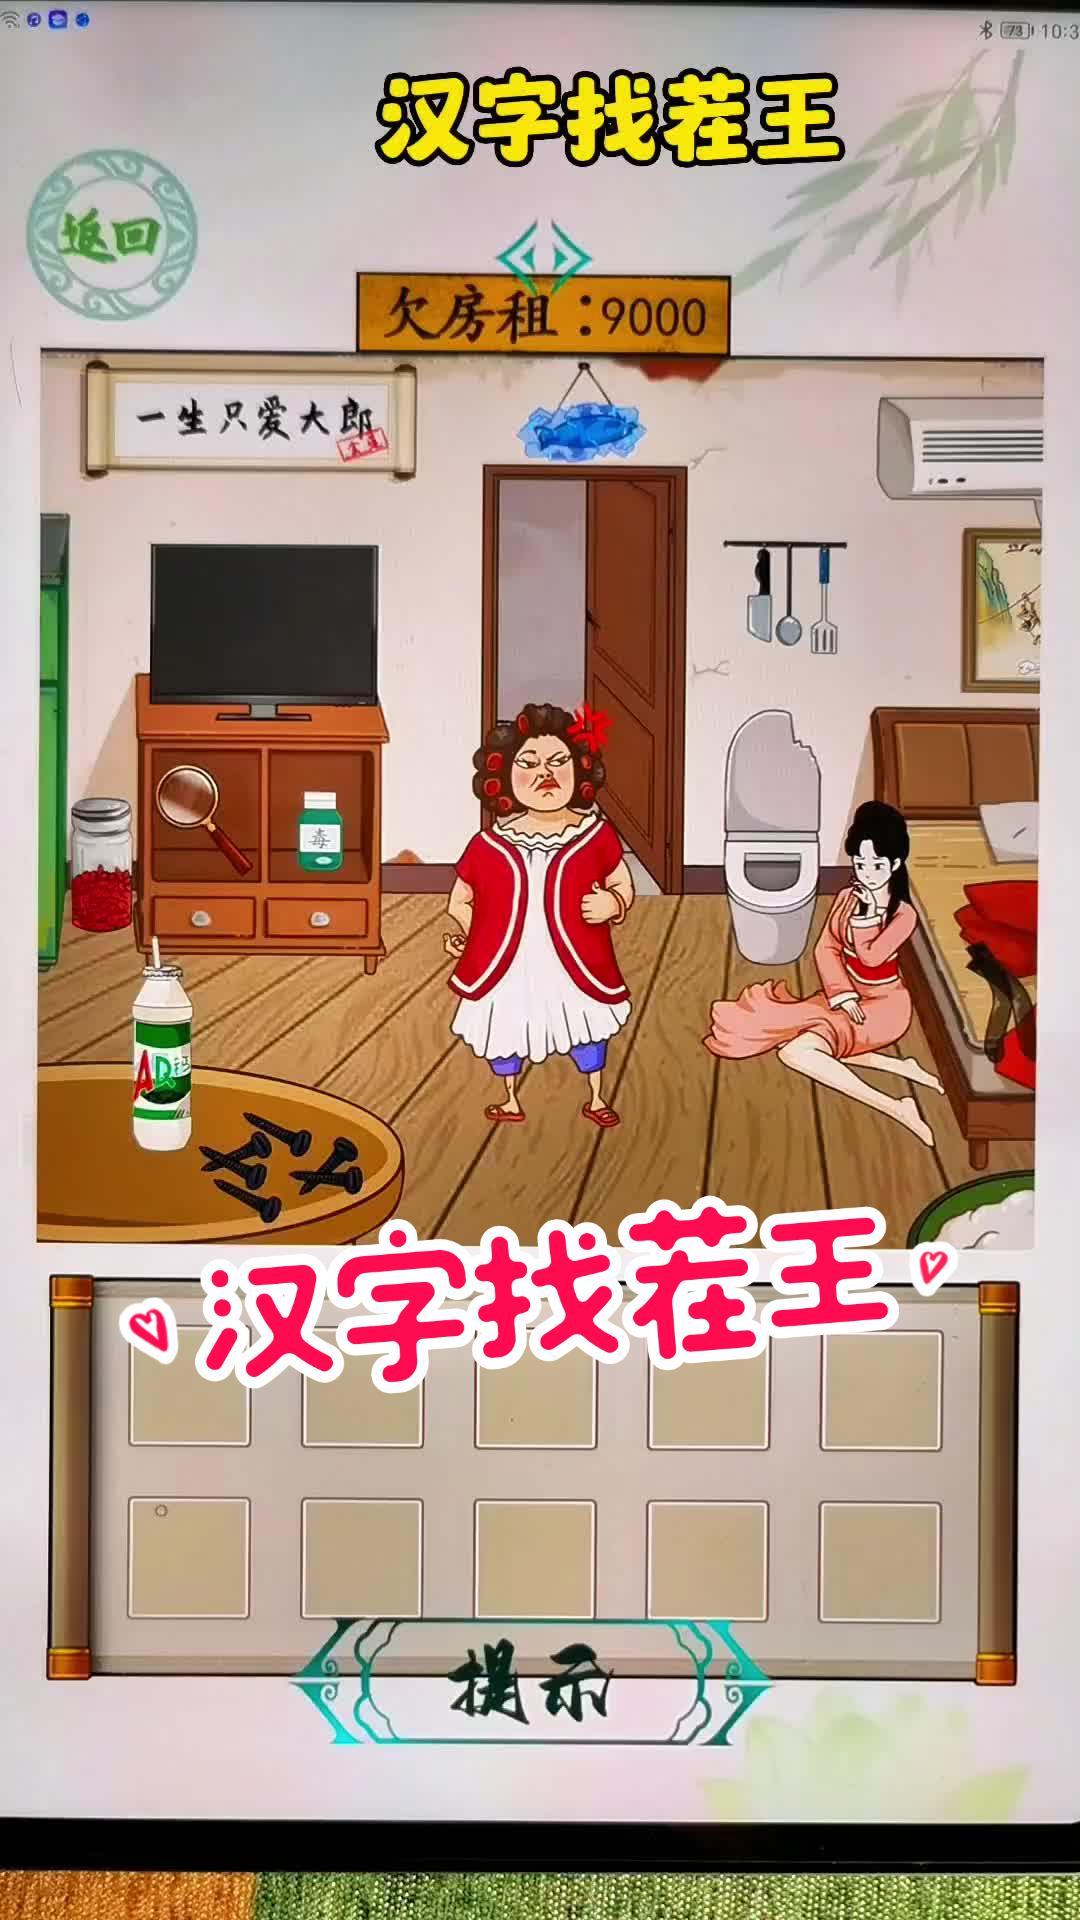 抖音小游戏 有趣的汉字游戏 汉字找茬王 学生党 休闲益智小游戏